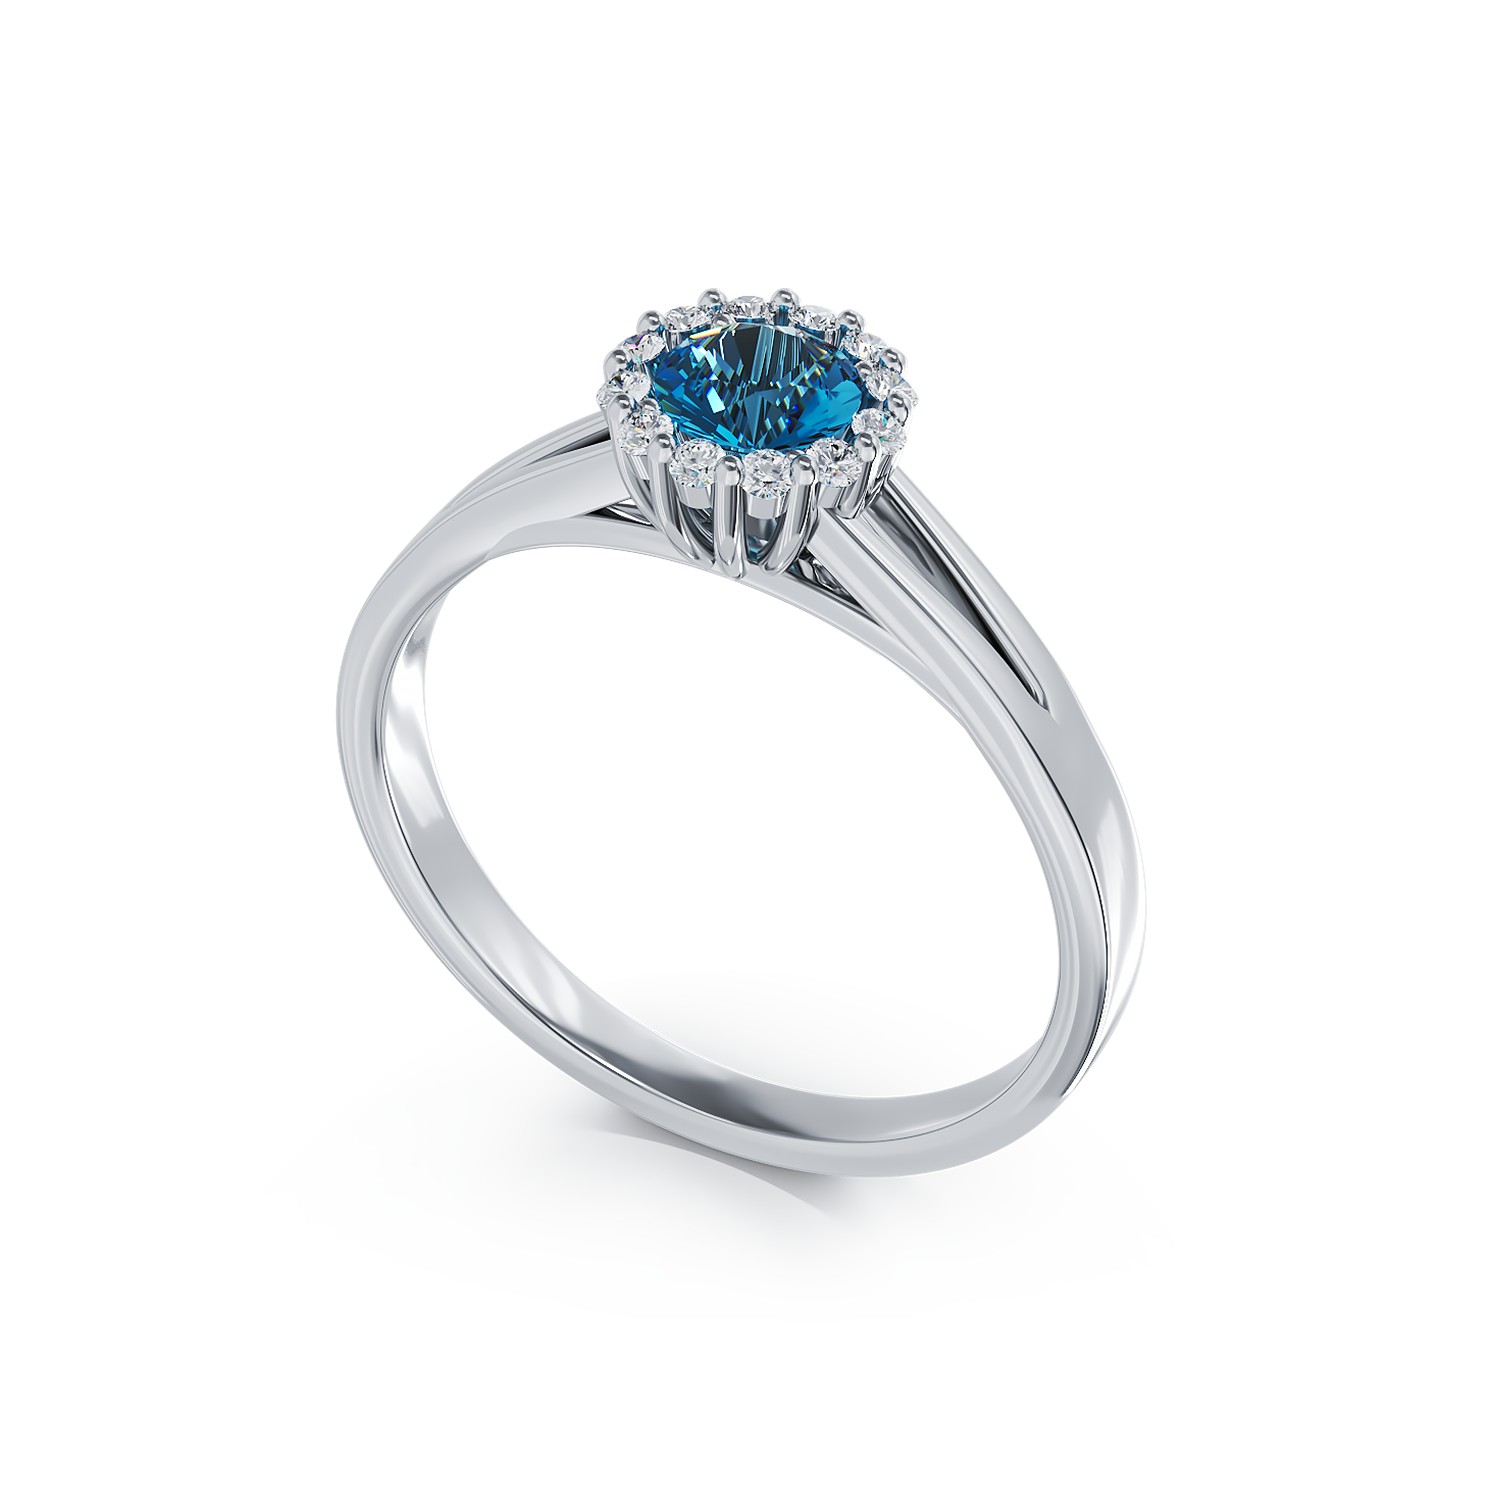 Eljegyzési gyűrű 18K-os fehér aranyból 0,22ct kék gyémánttal és 0,1ct gyémánttal